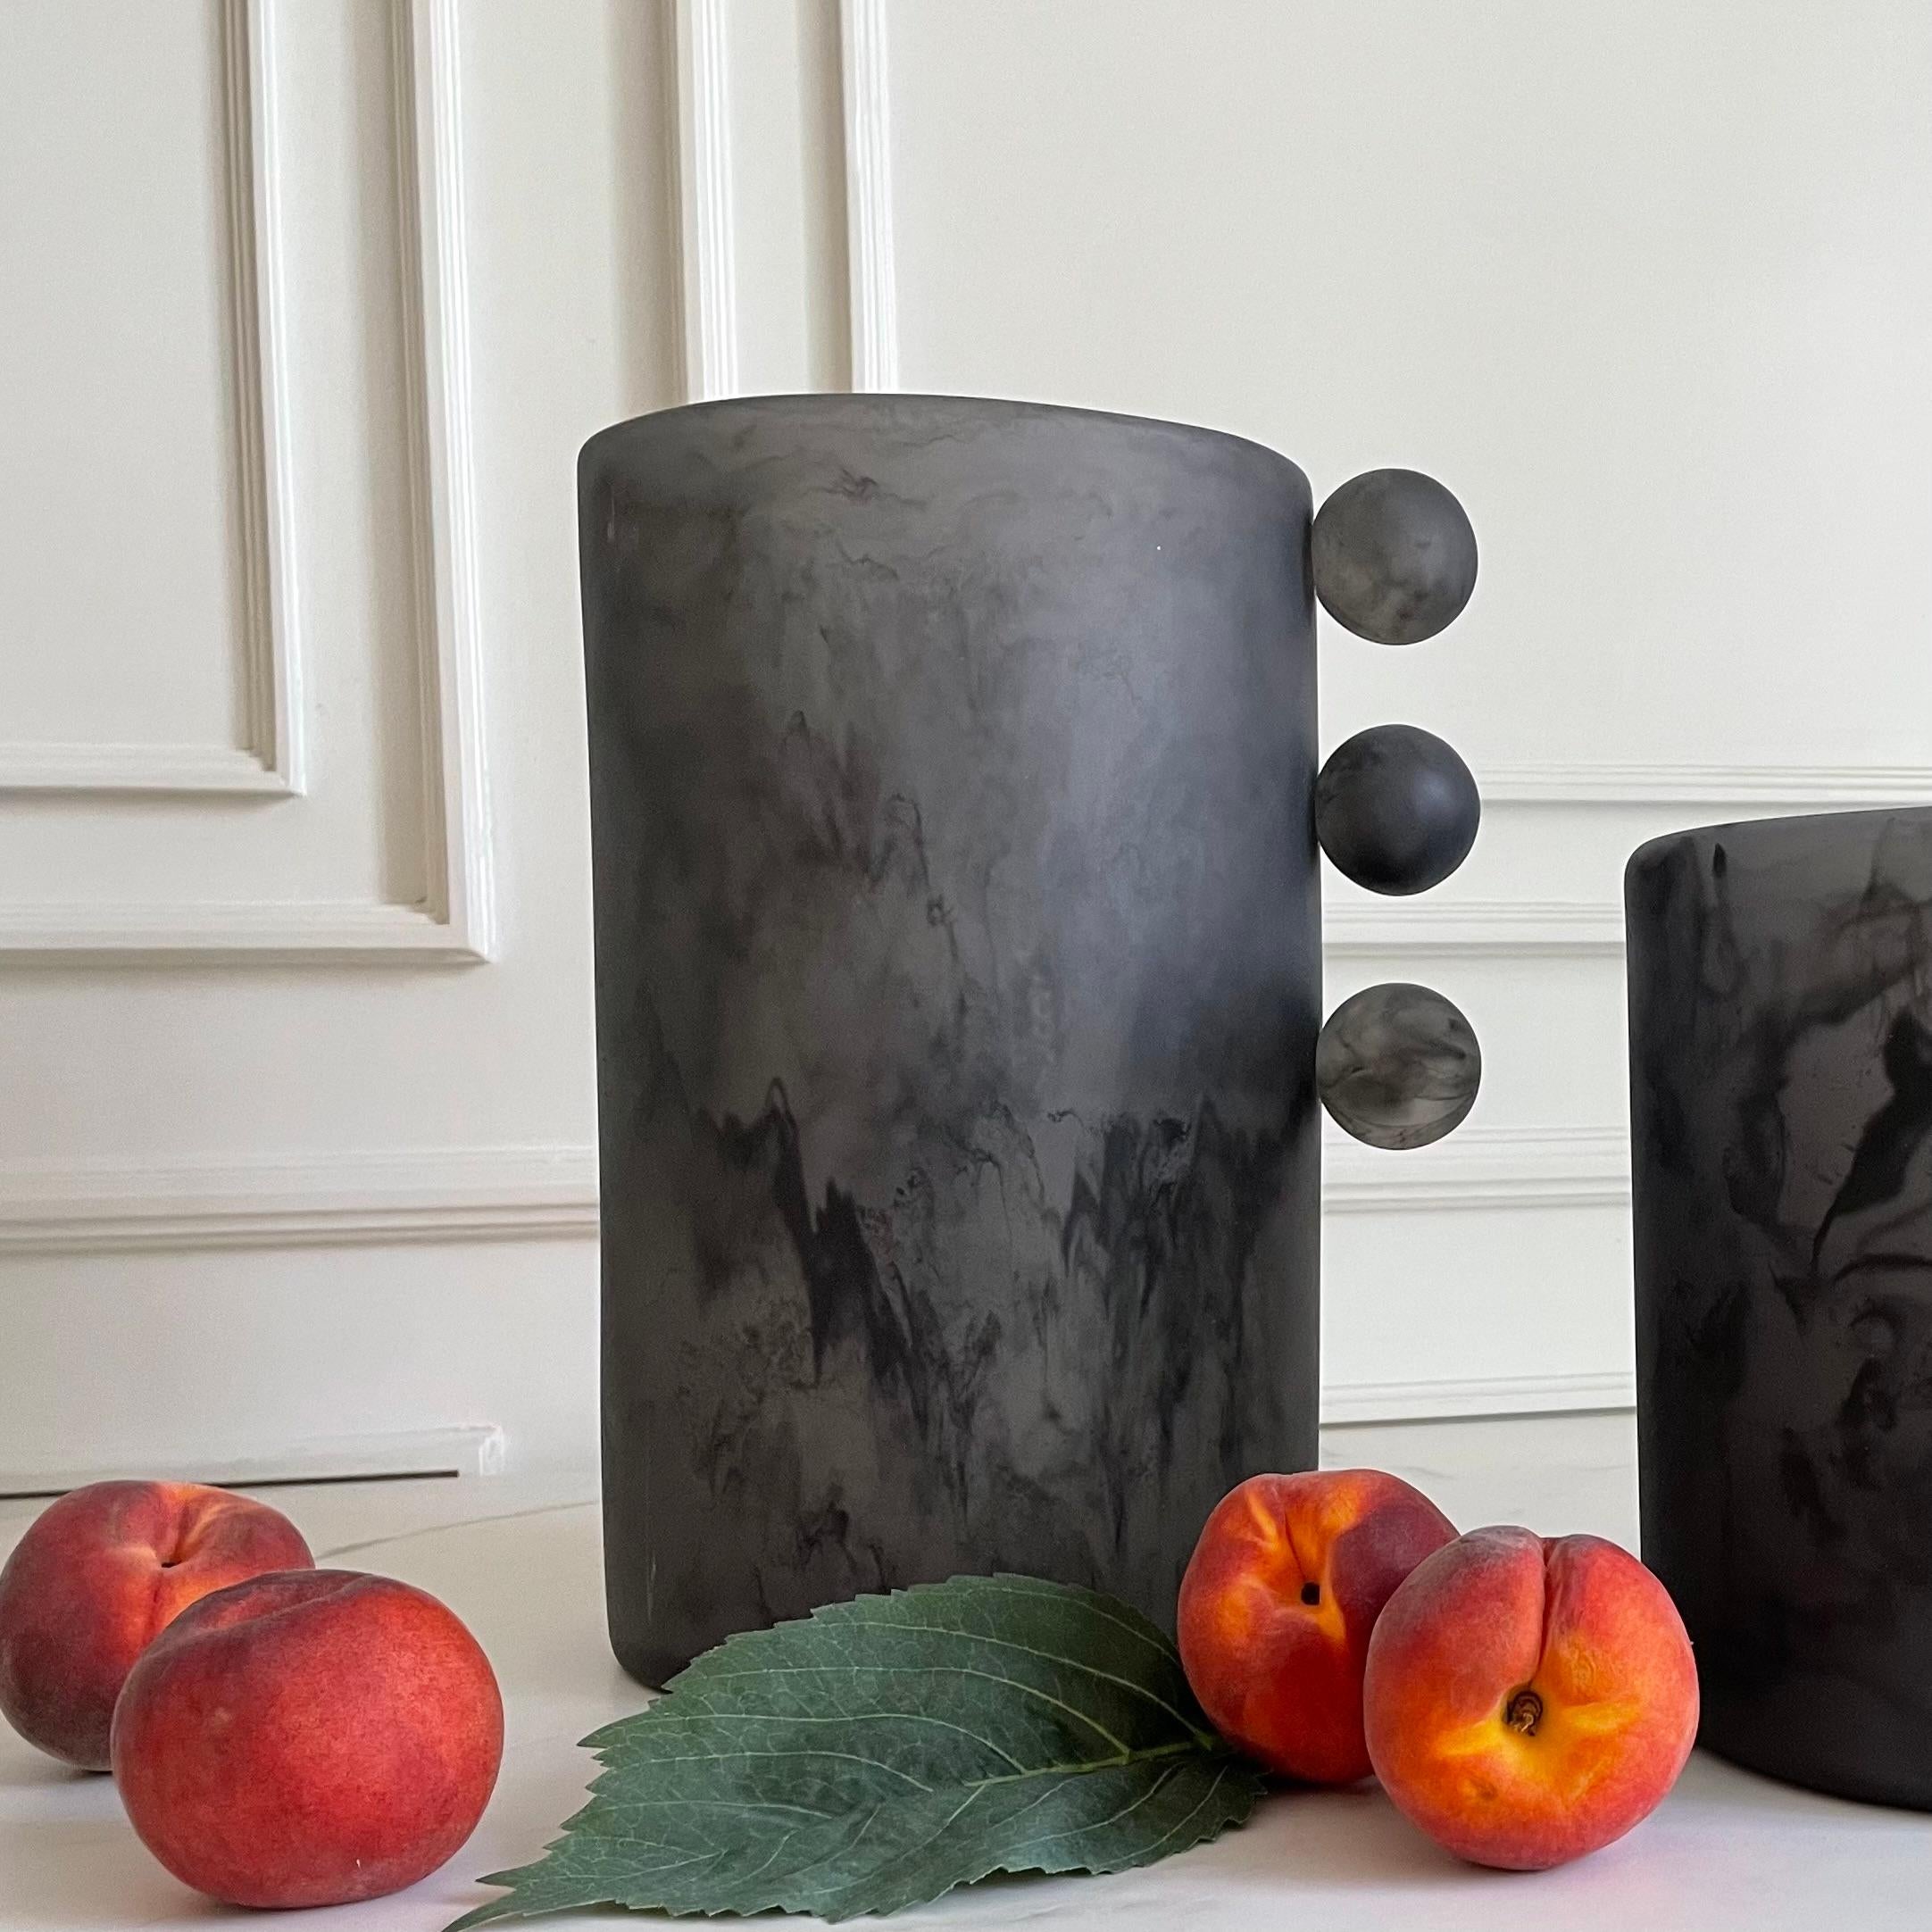 Die auffällige und elegante Tall Bubble Vase hat eine einzigartige Silhouette, die jedem Raum eine moderne und verspielte Note verleiht. Ob als Einrichtungsgegenstand oder als Blumenschmuck, diese Vase ist ebenso vielseitig wie schön.

Erhältlich in